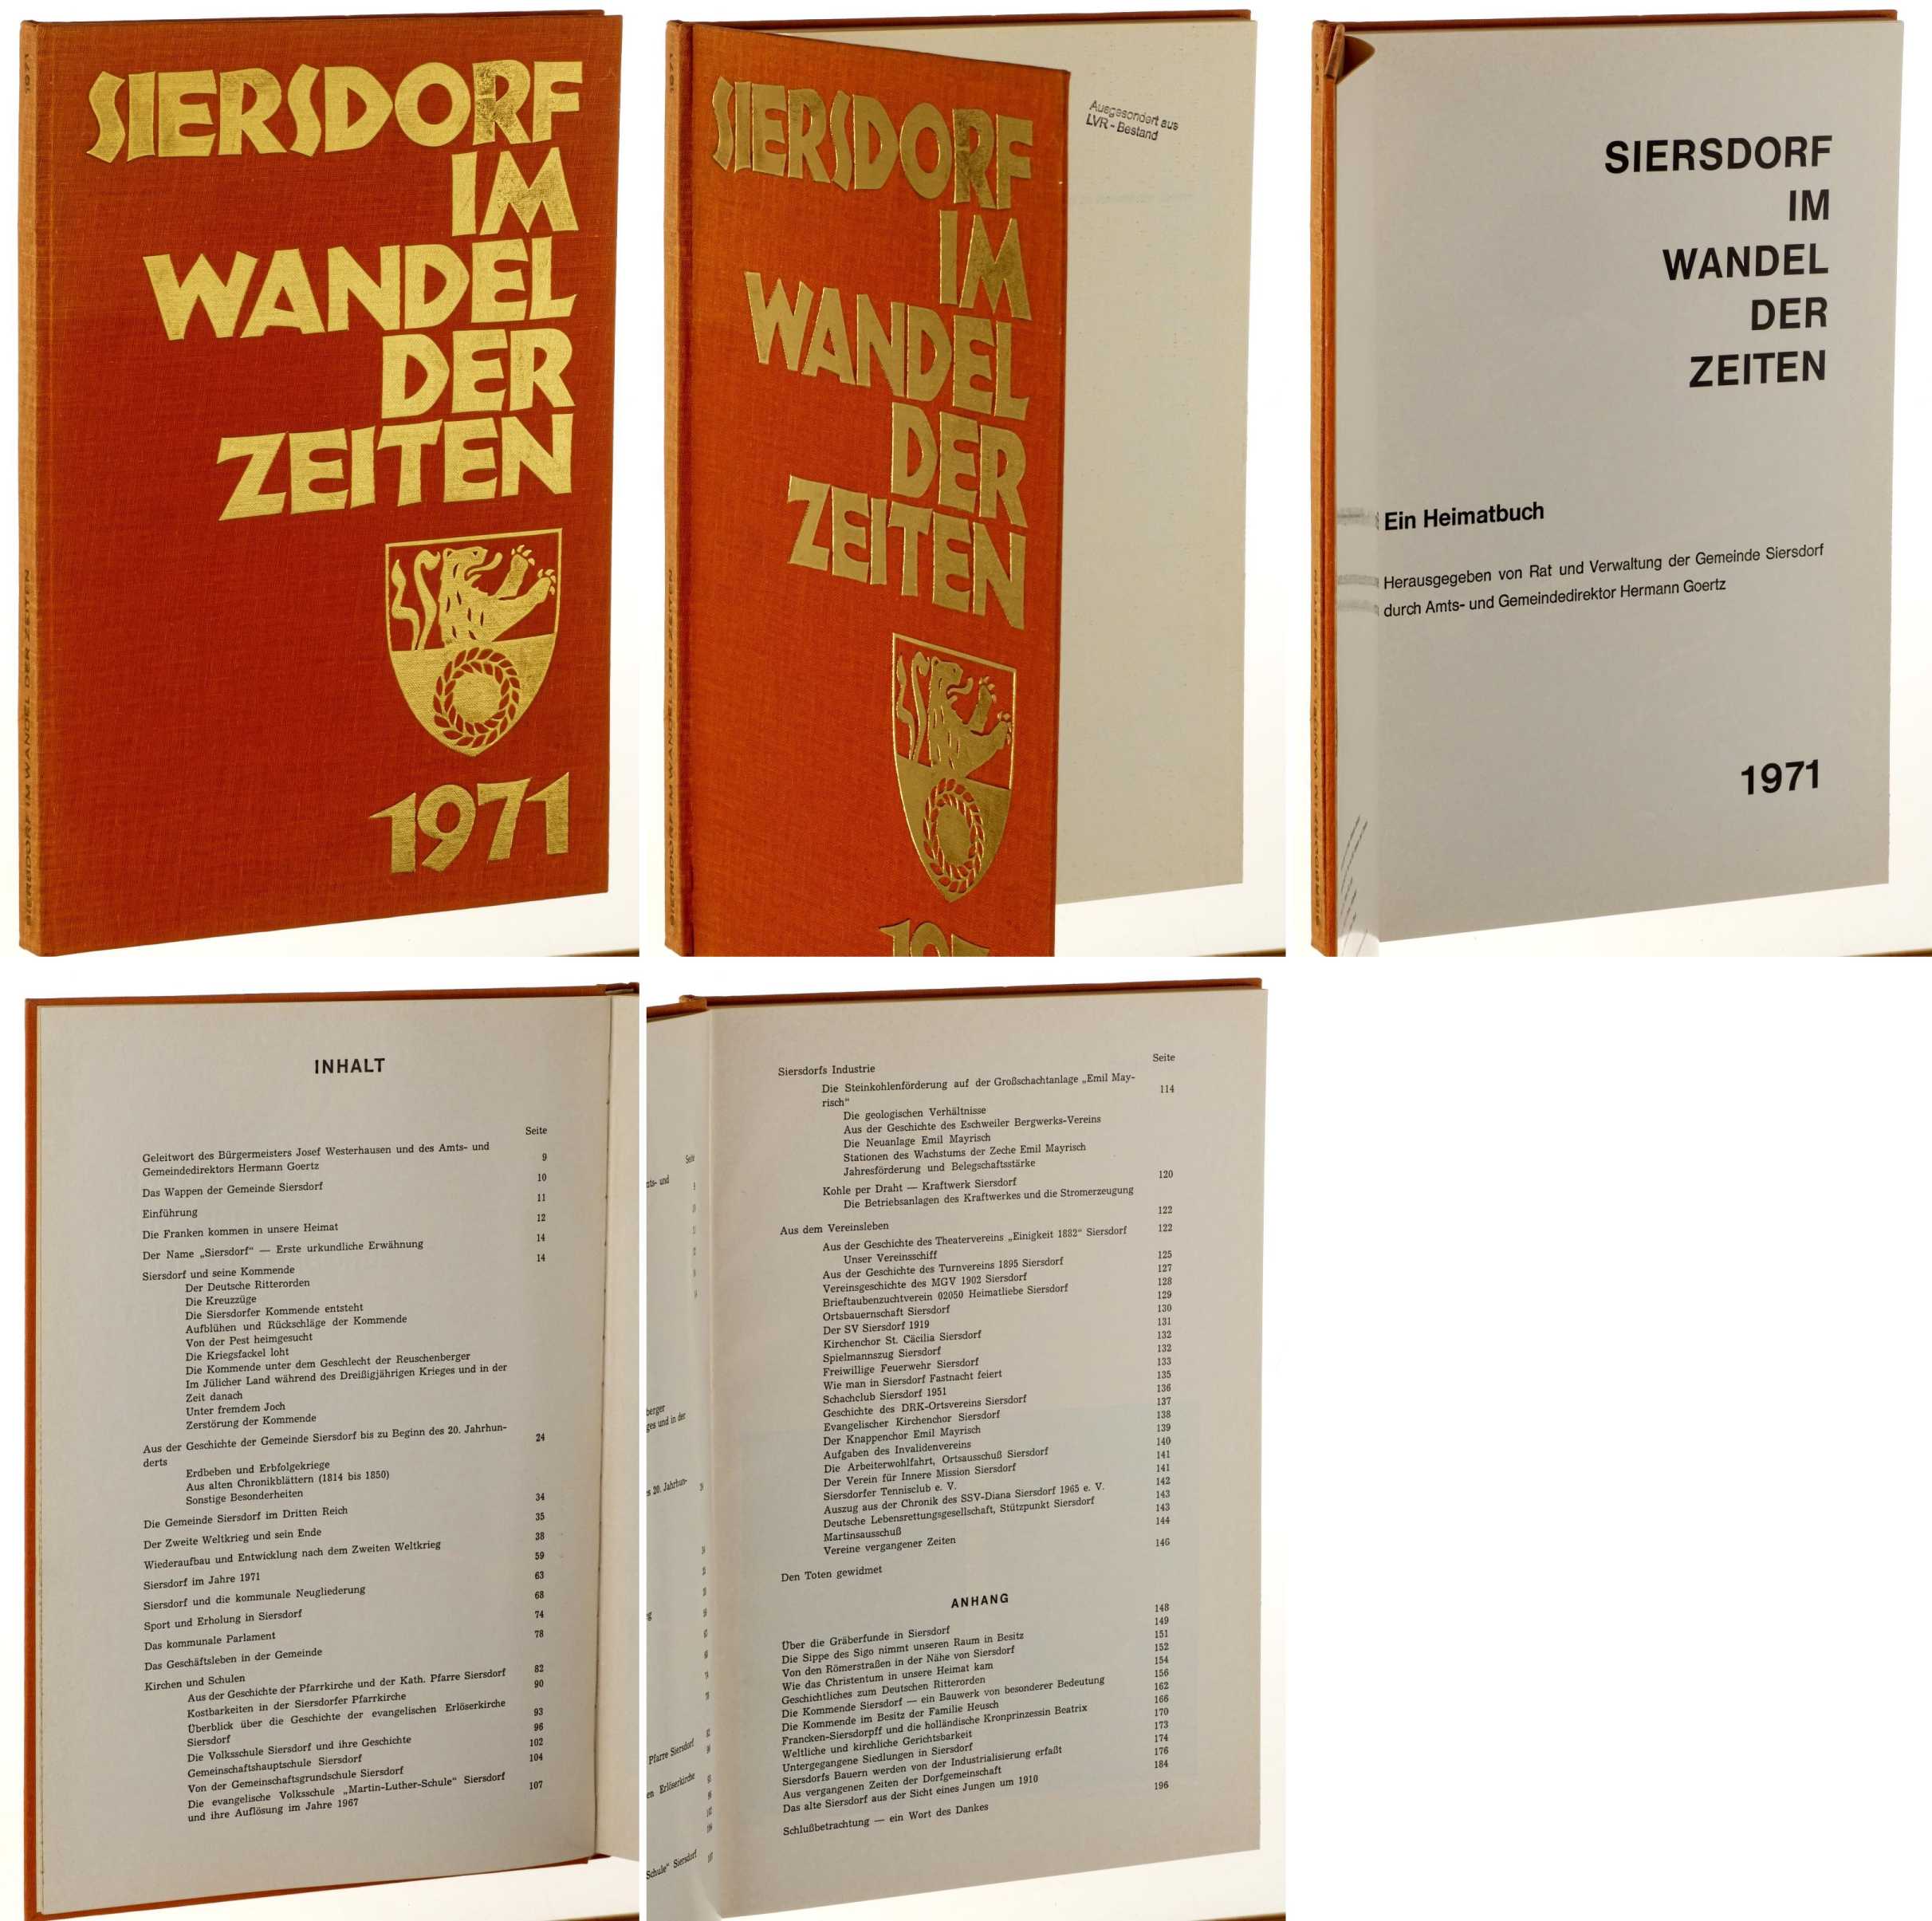   Siersdorf im Wandel der Zeiten. Ein Heimatbuch. Hrsg.: Gemeinde Siersdorf/ Hermann Goertz. 